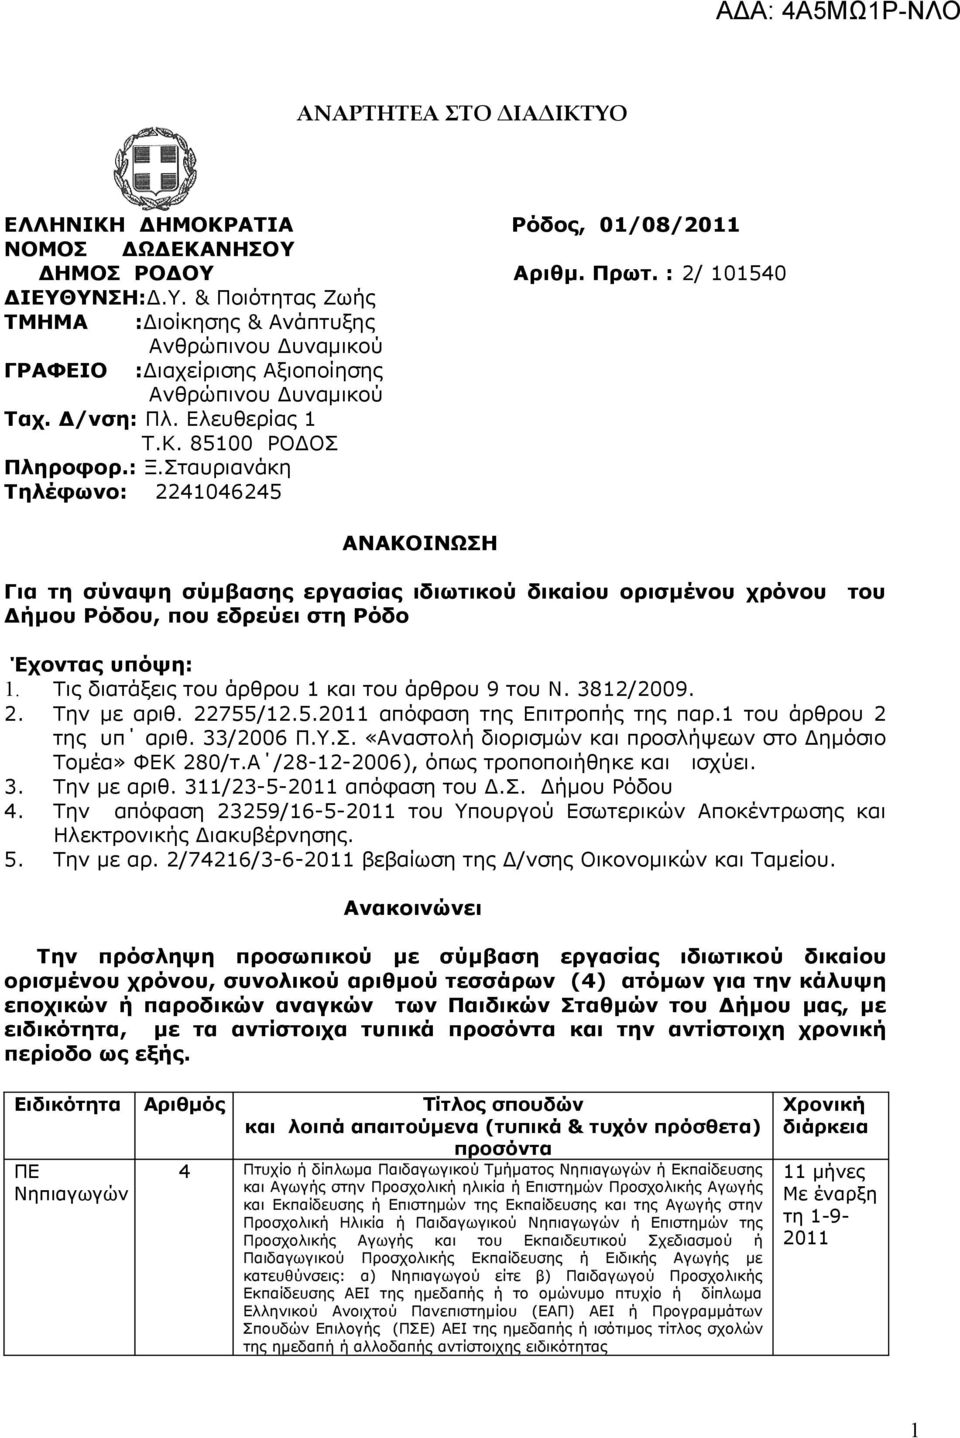 Σταυριανάκη Τηλέφωνο: 2241046245 ΑΝΑΚΟΙΝΩΣΗ Για τη σύναψη σύμβασης εργασίας ιδιωτικού δικαίου ορισμένου χρόνου του Δήμου Ρόδου, που εδρεύει στη Ρόδο Έχοντας υπόψη: 1.